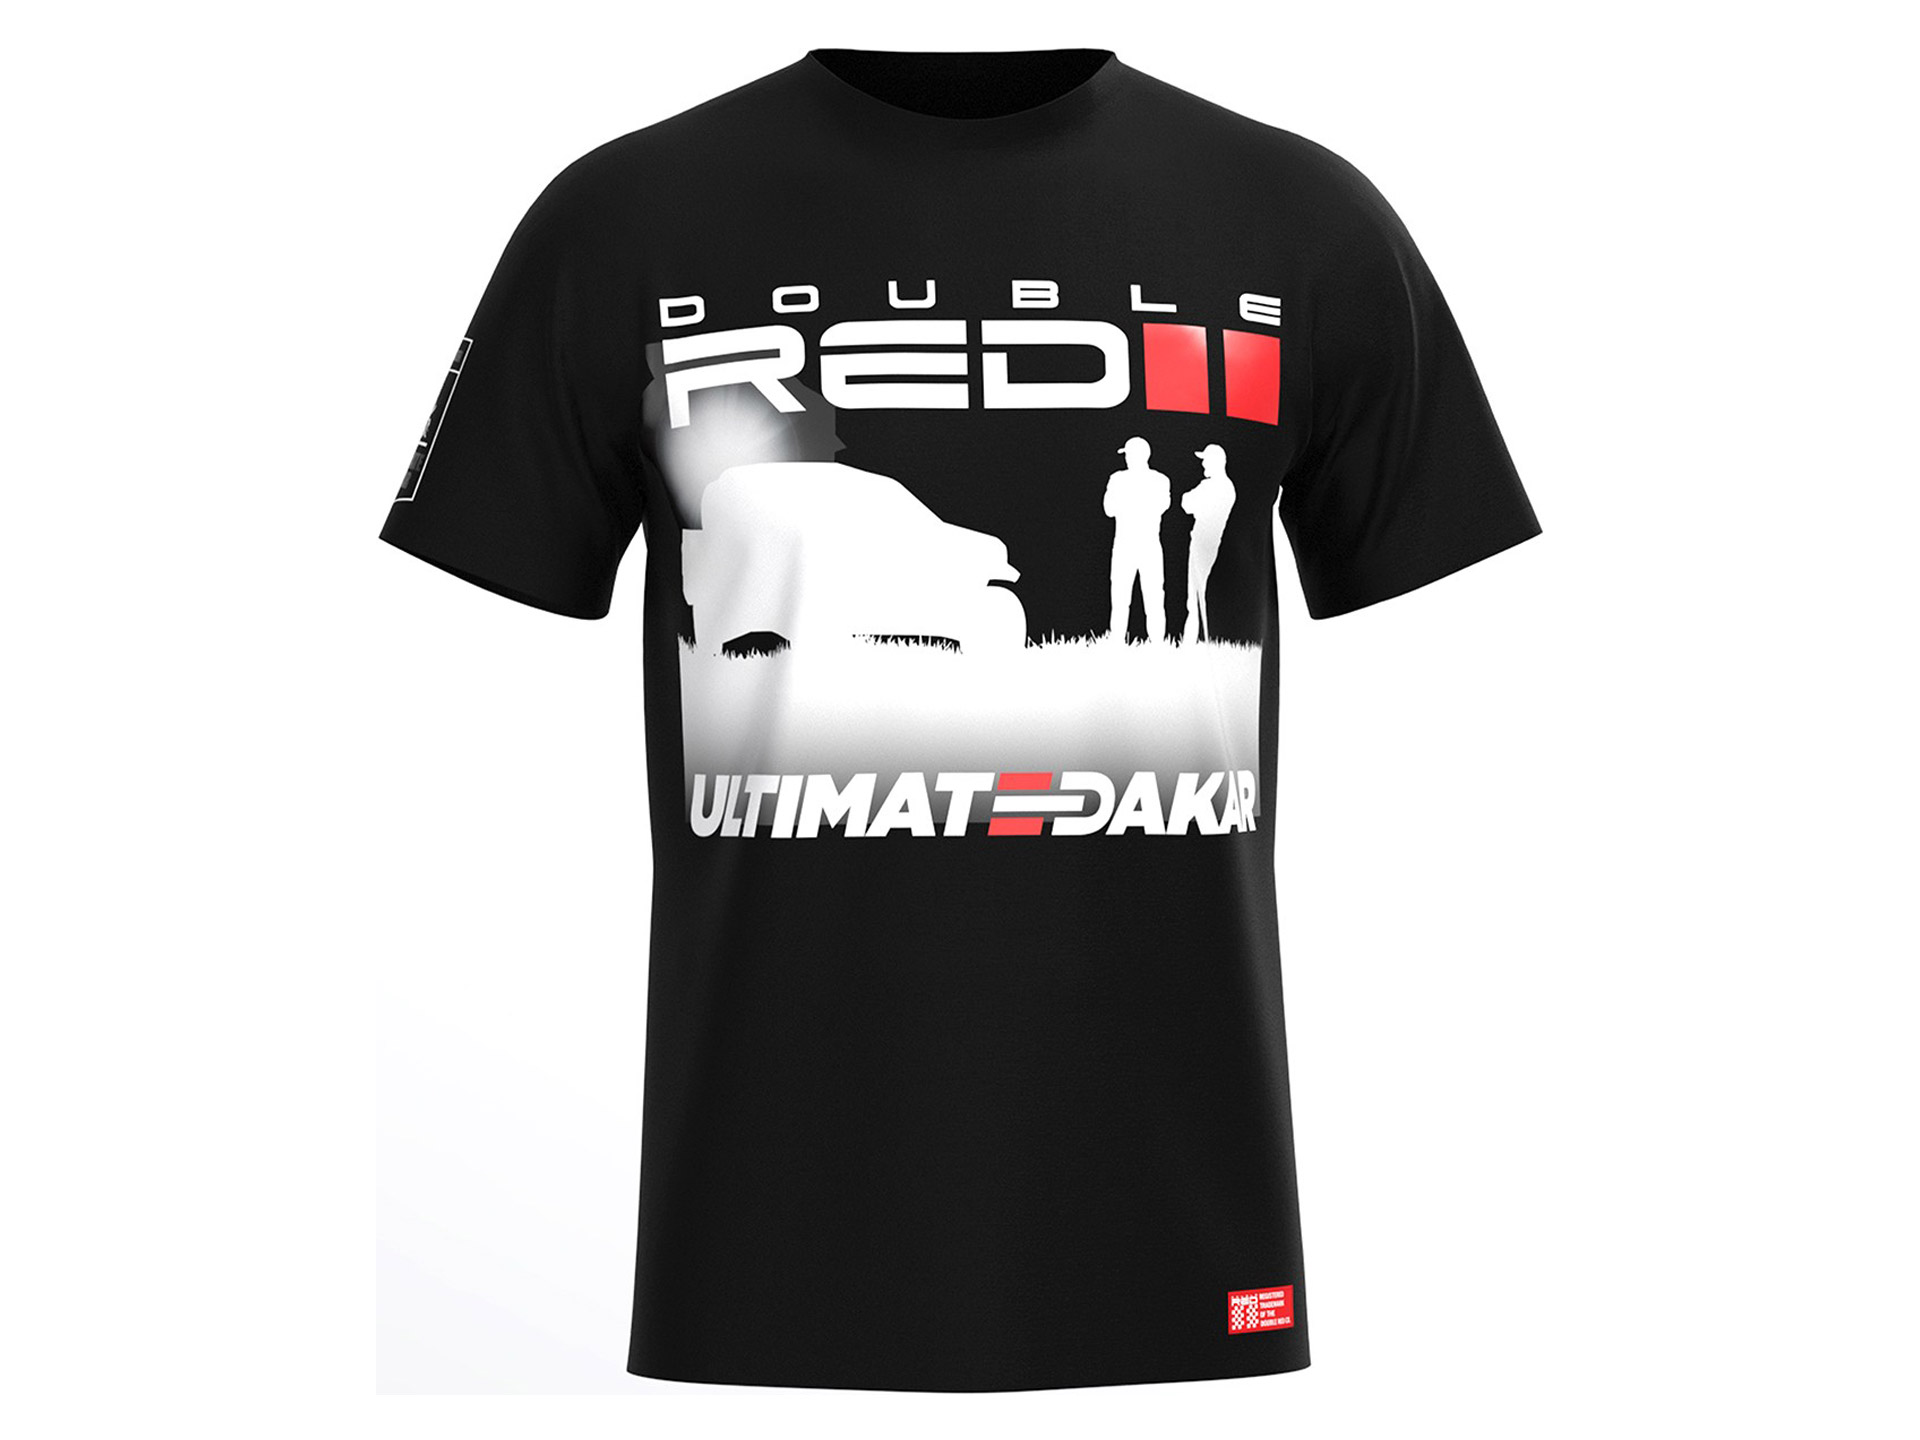 Obrázek galerie Tričko Ultimate Dakar Racing – Kolekce Double Red 2021 – Unisex černá – L